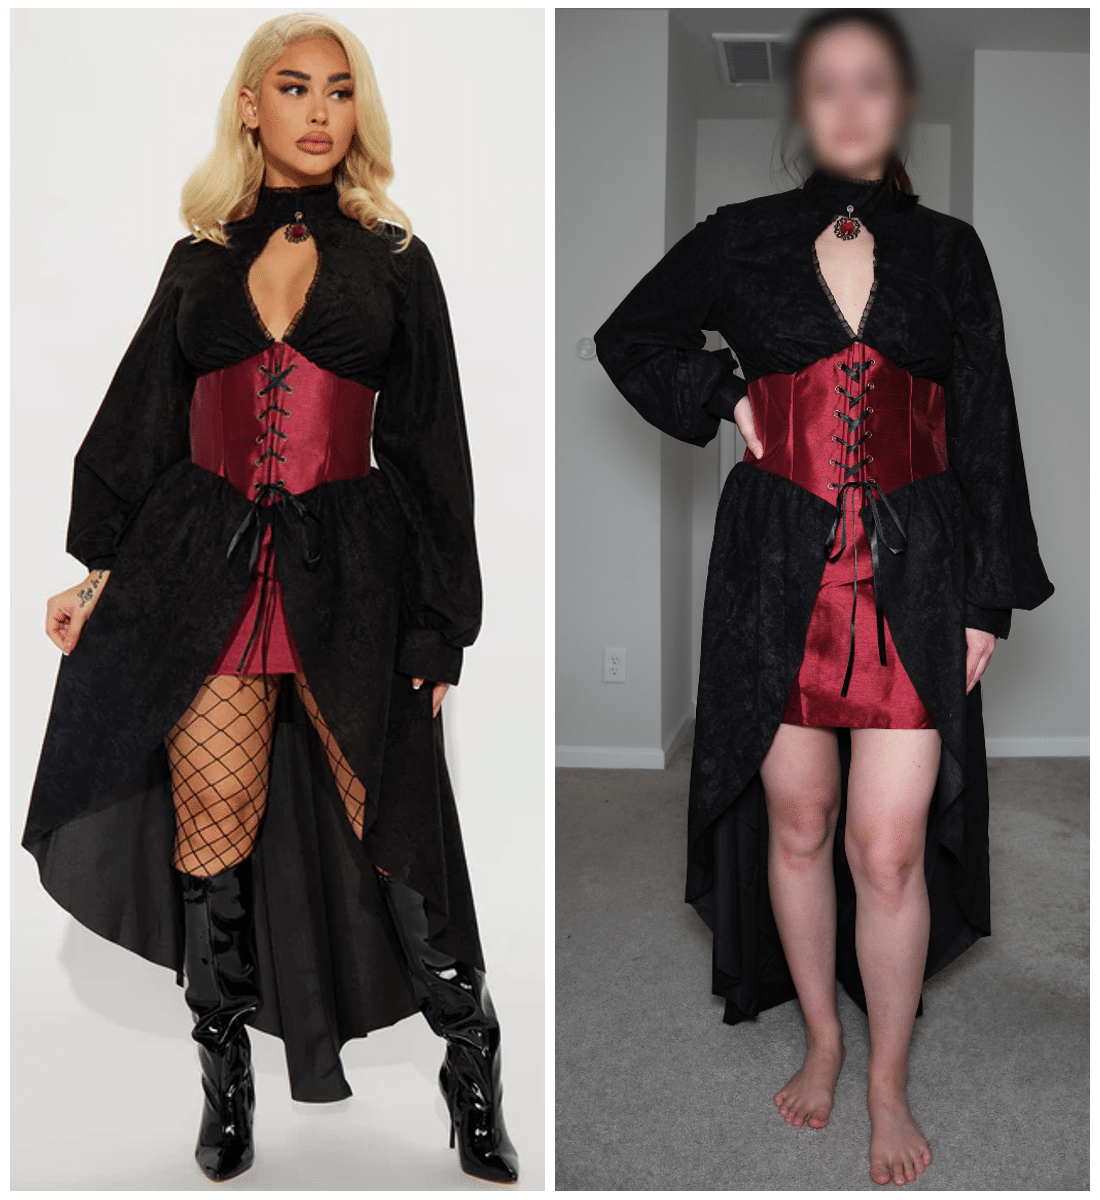 fashion nova vampy vixen costume comparison